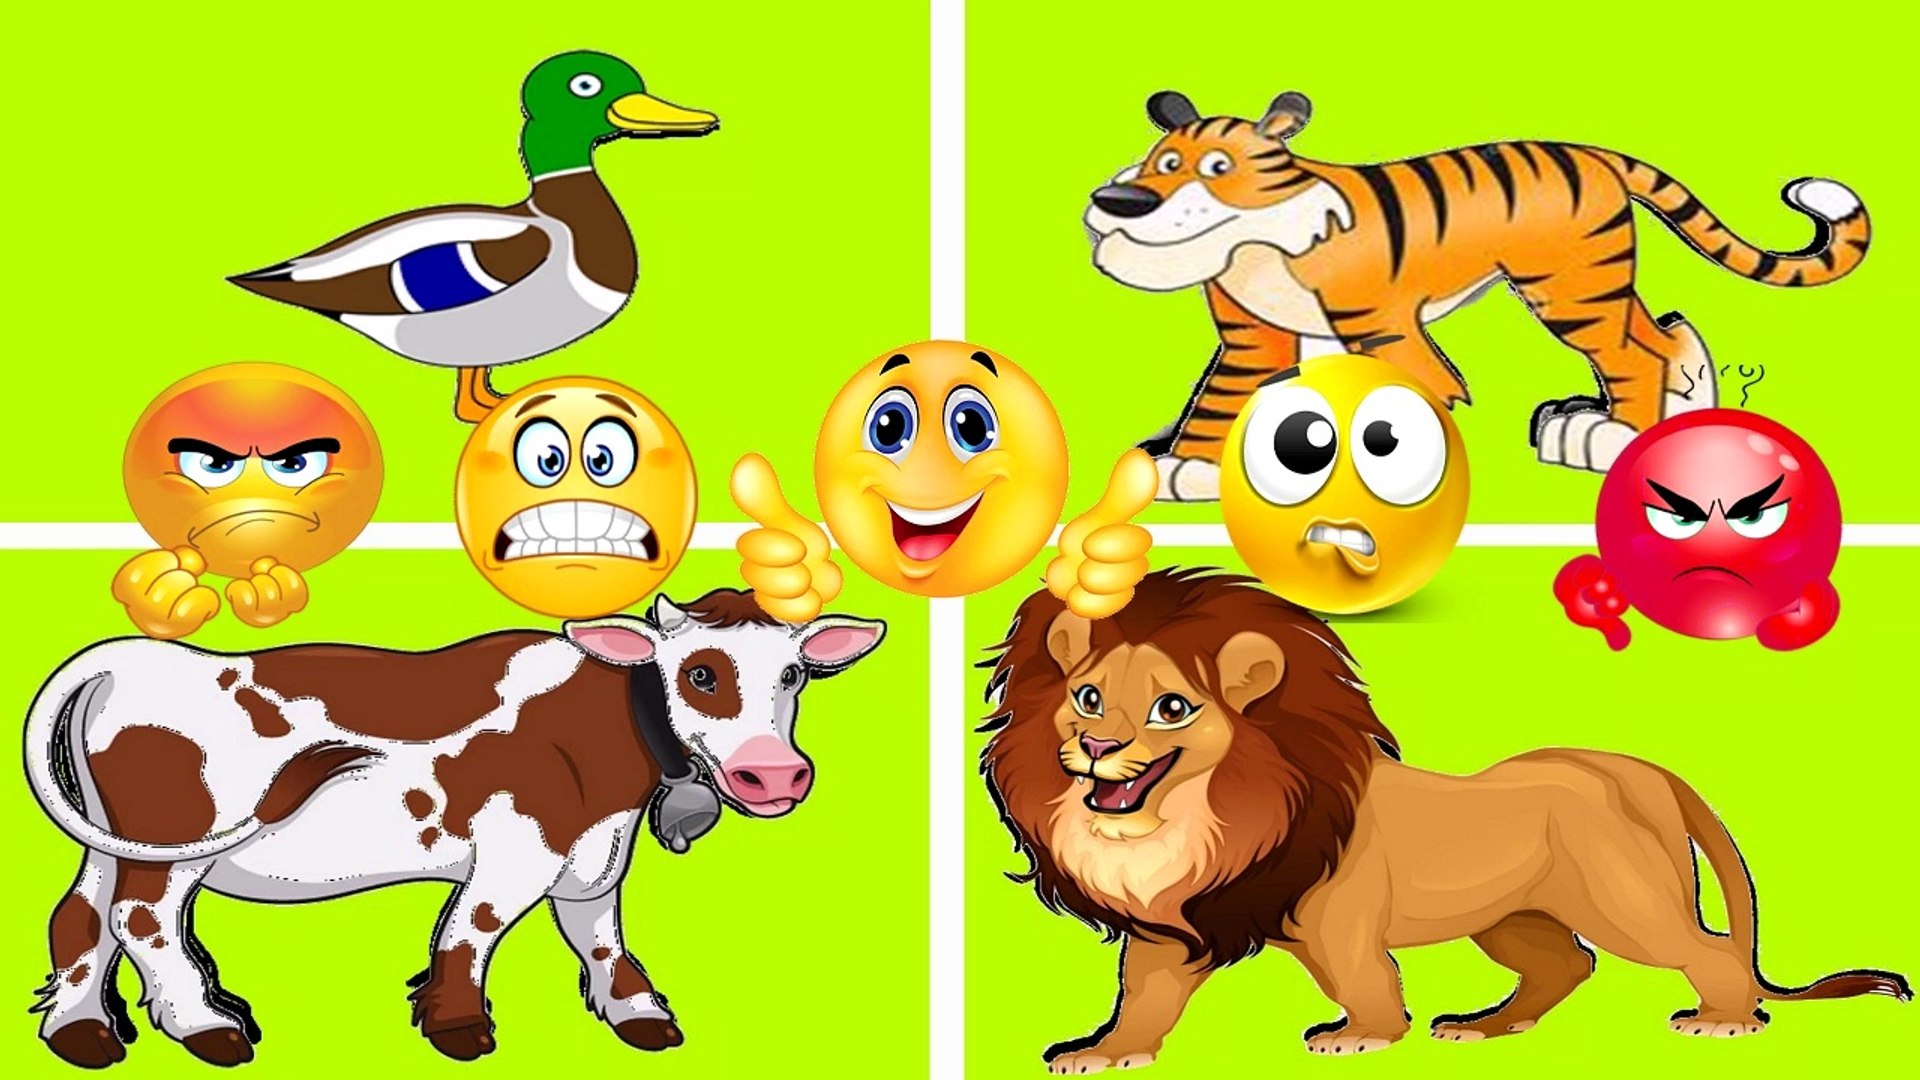 العاب تركيب الحيوانات للاطفال - مع اغنية حيوانات المزرعة - video Dailymotion